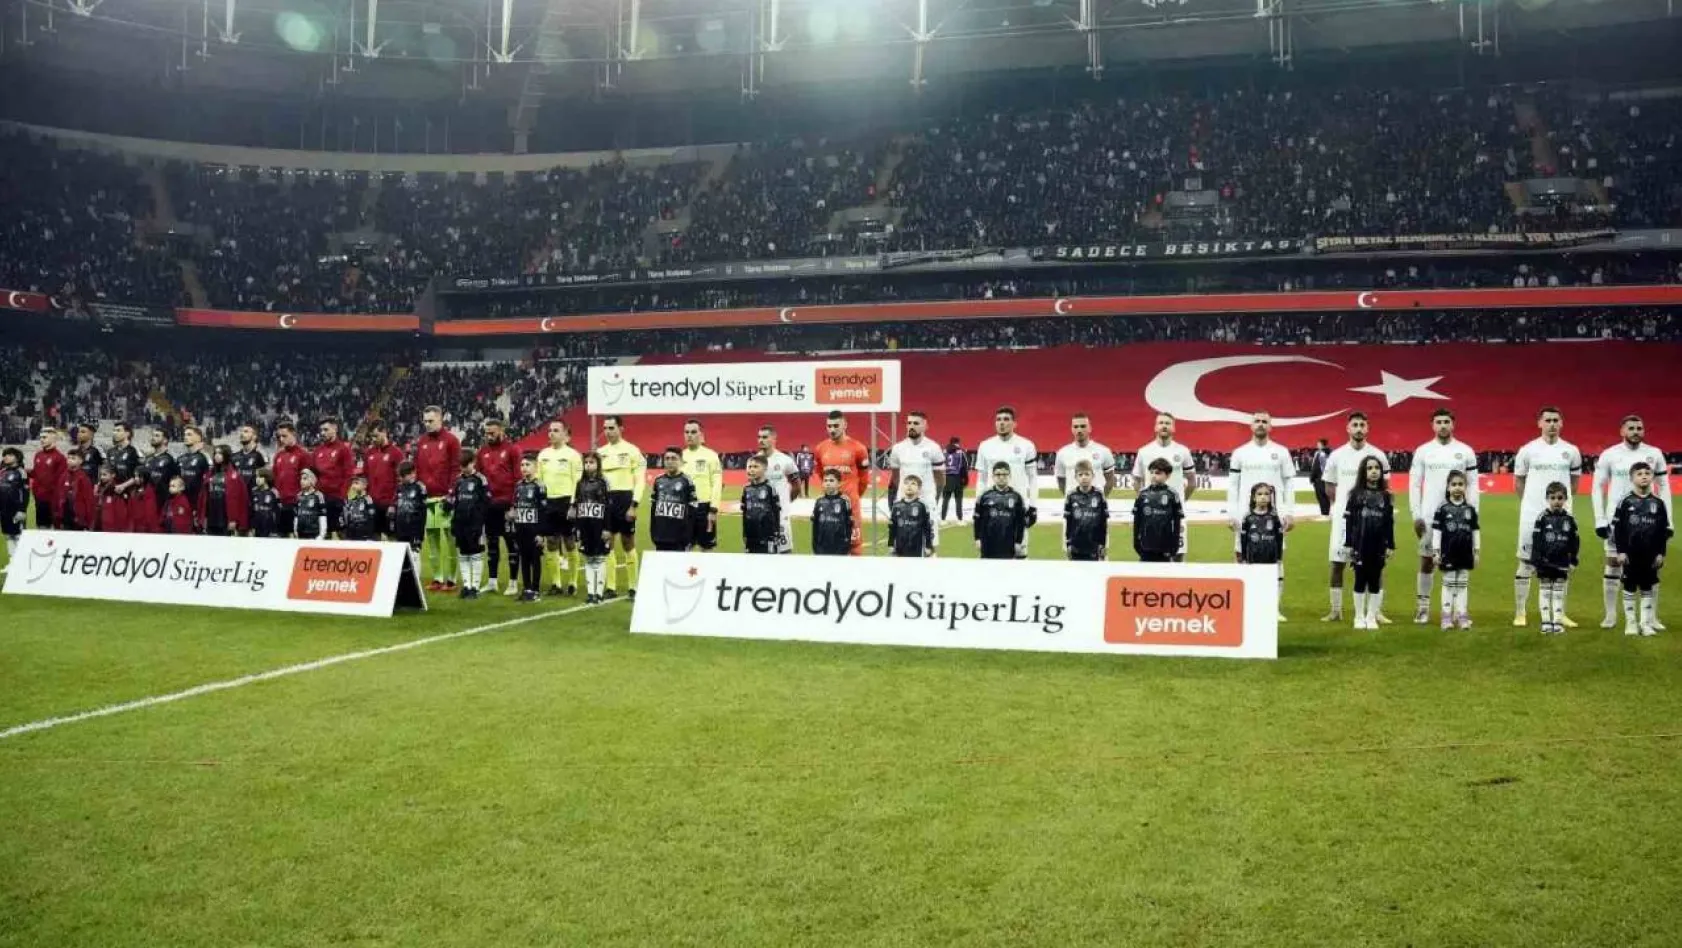 Trendyol Süper Lig: Beşiktaş: 0 - Fatih Karagümrük: 0 (Maç devam ediyor)